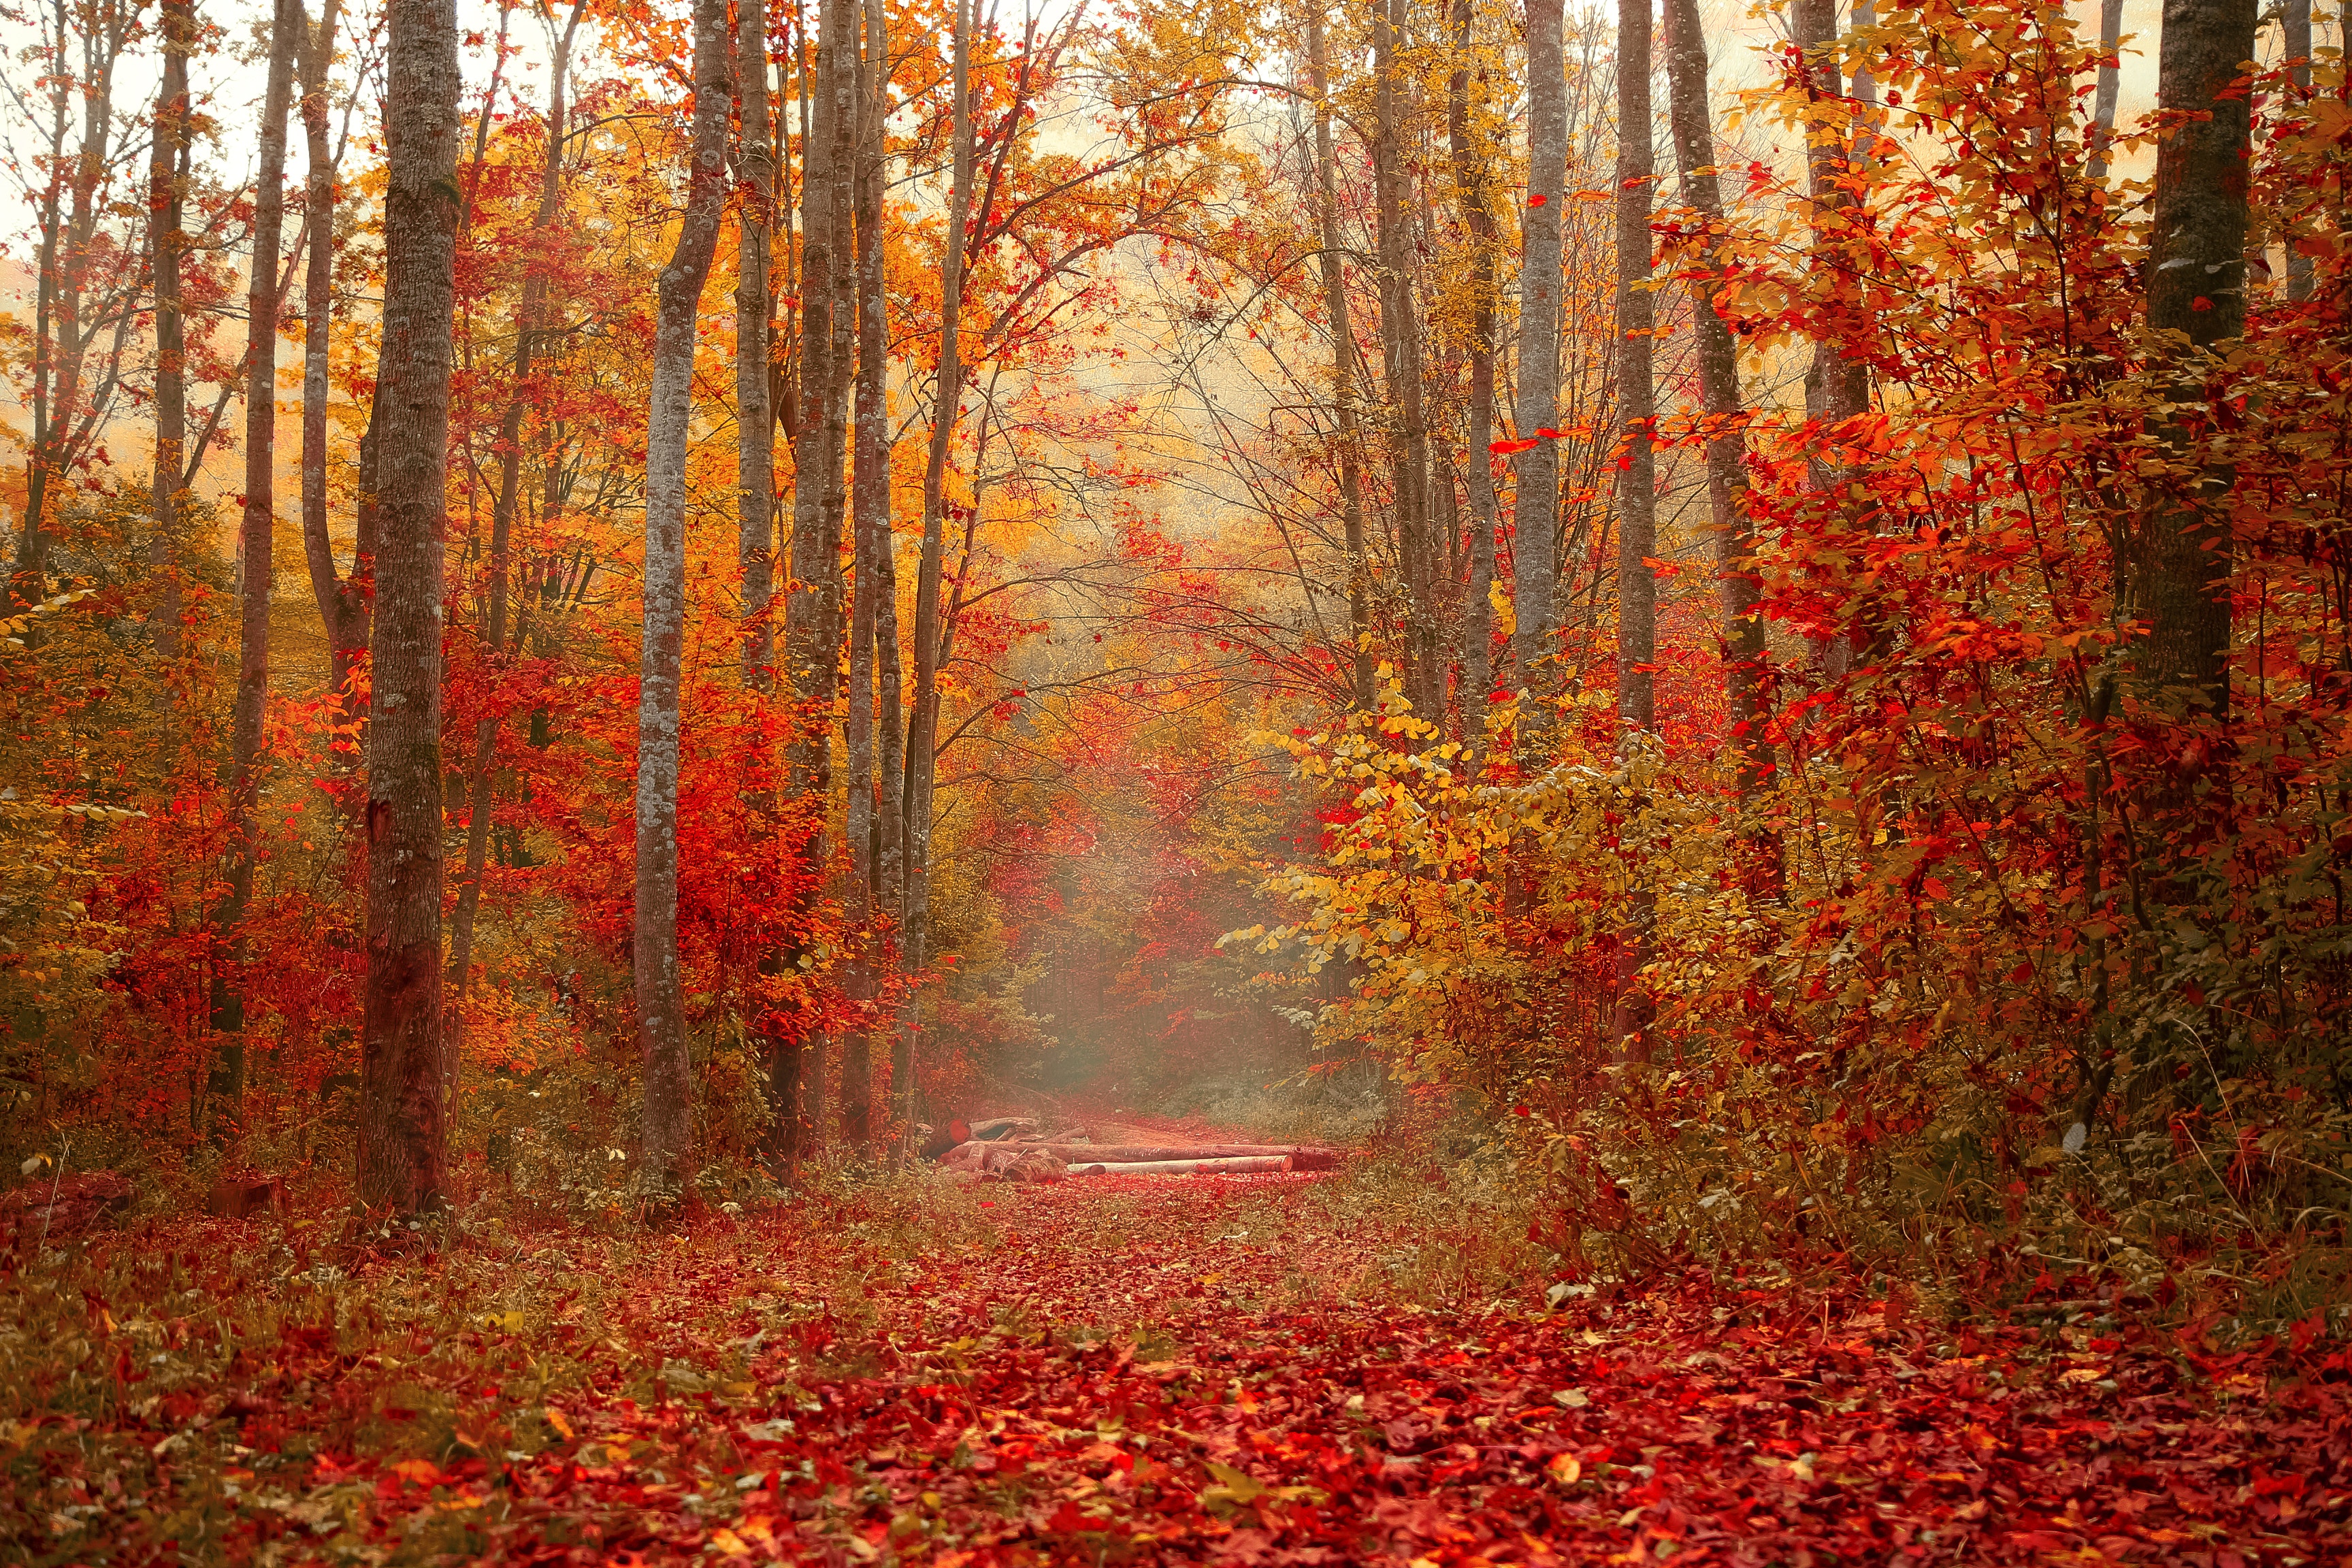 trees, autumn, nature, forest, foliage, colorful, colourful